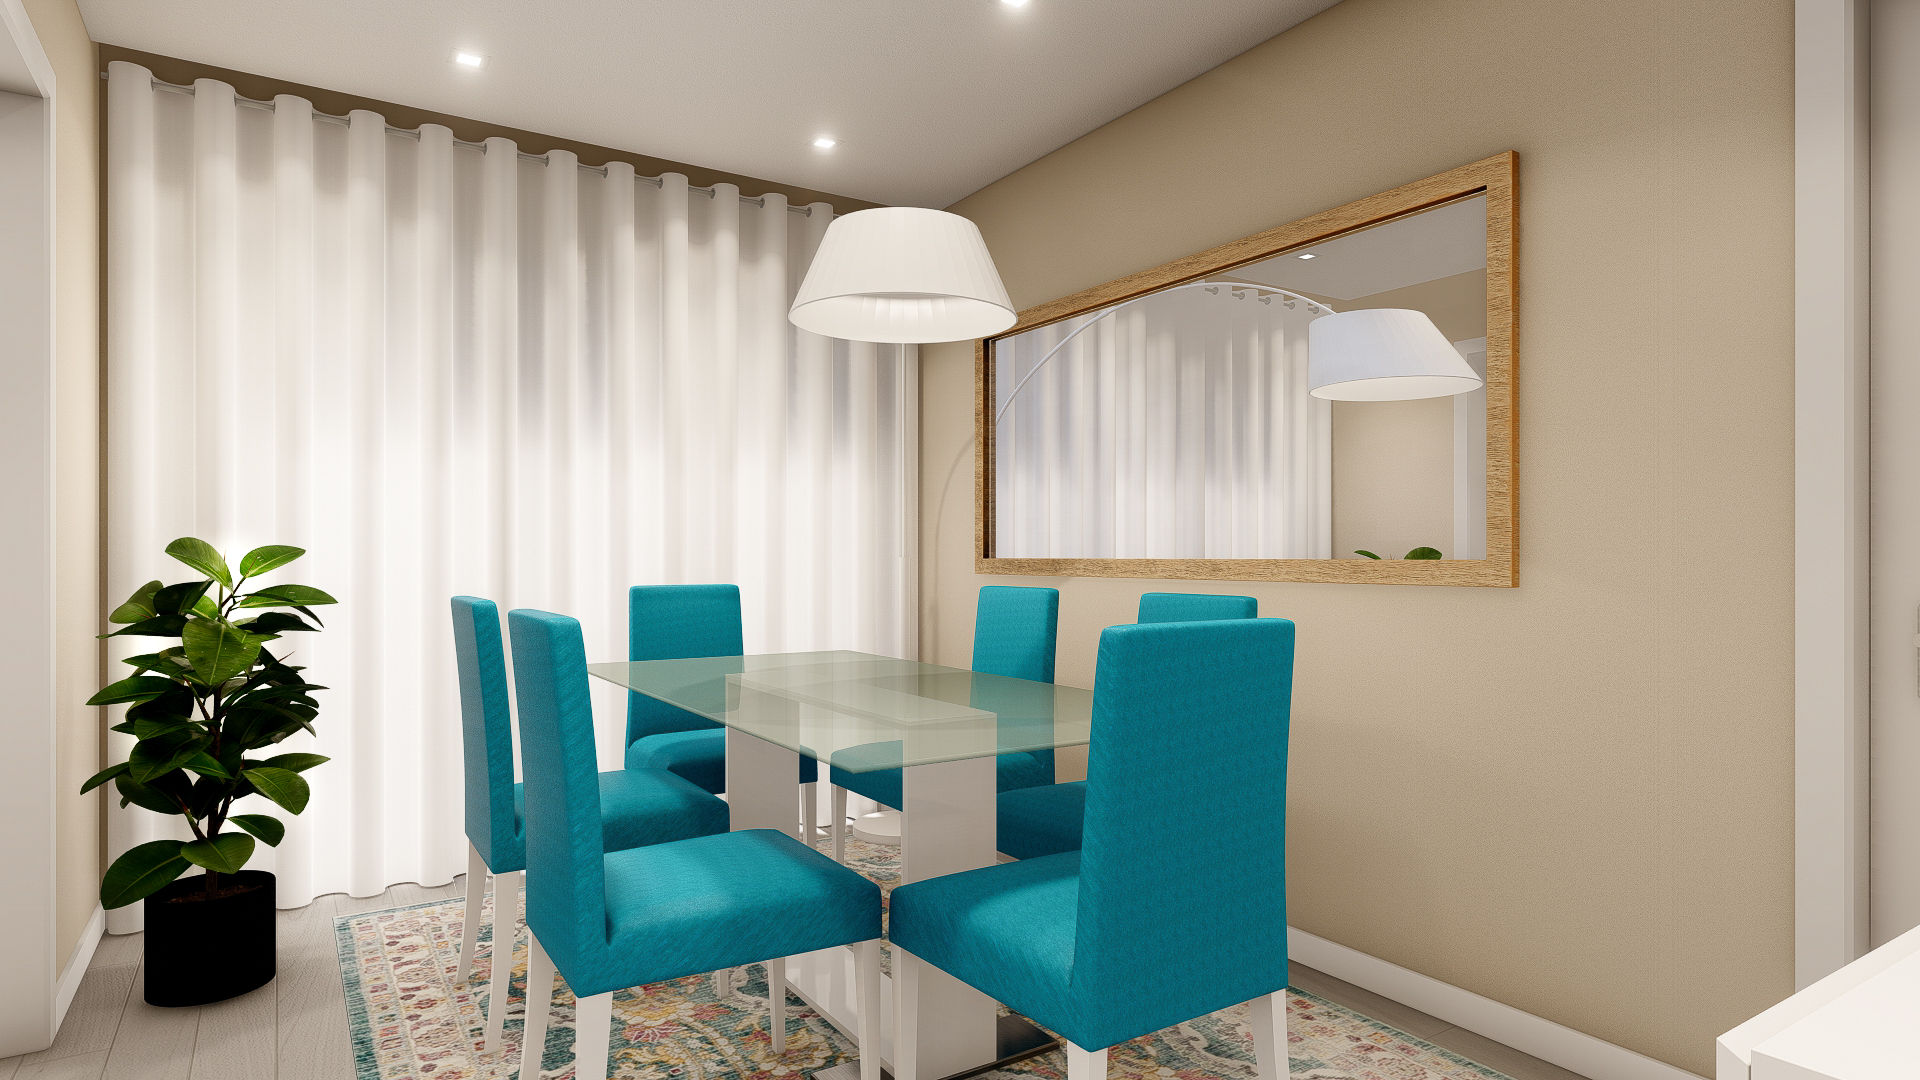 sala de jantar homify Salas de jantar modernas decoração, design, sala jantar, azul, candeeiro em arco, mesa vidro, cadeiras azuis,